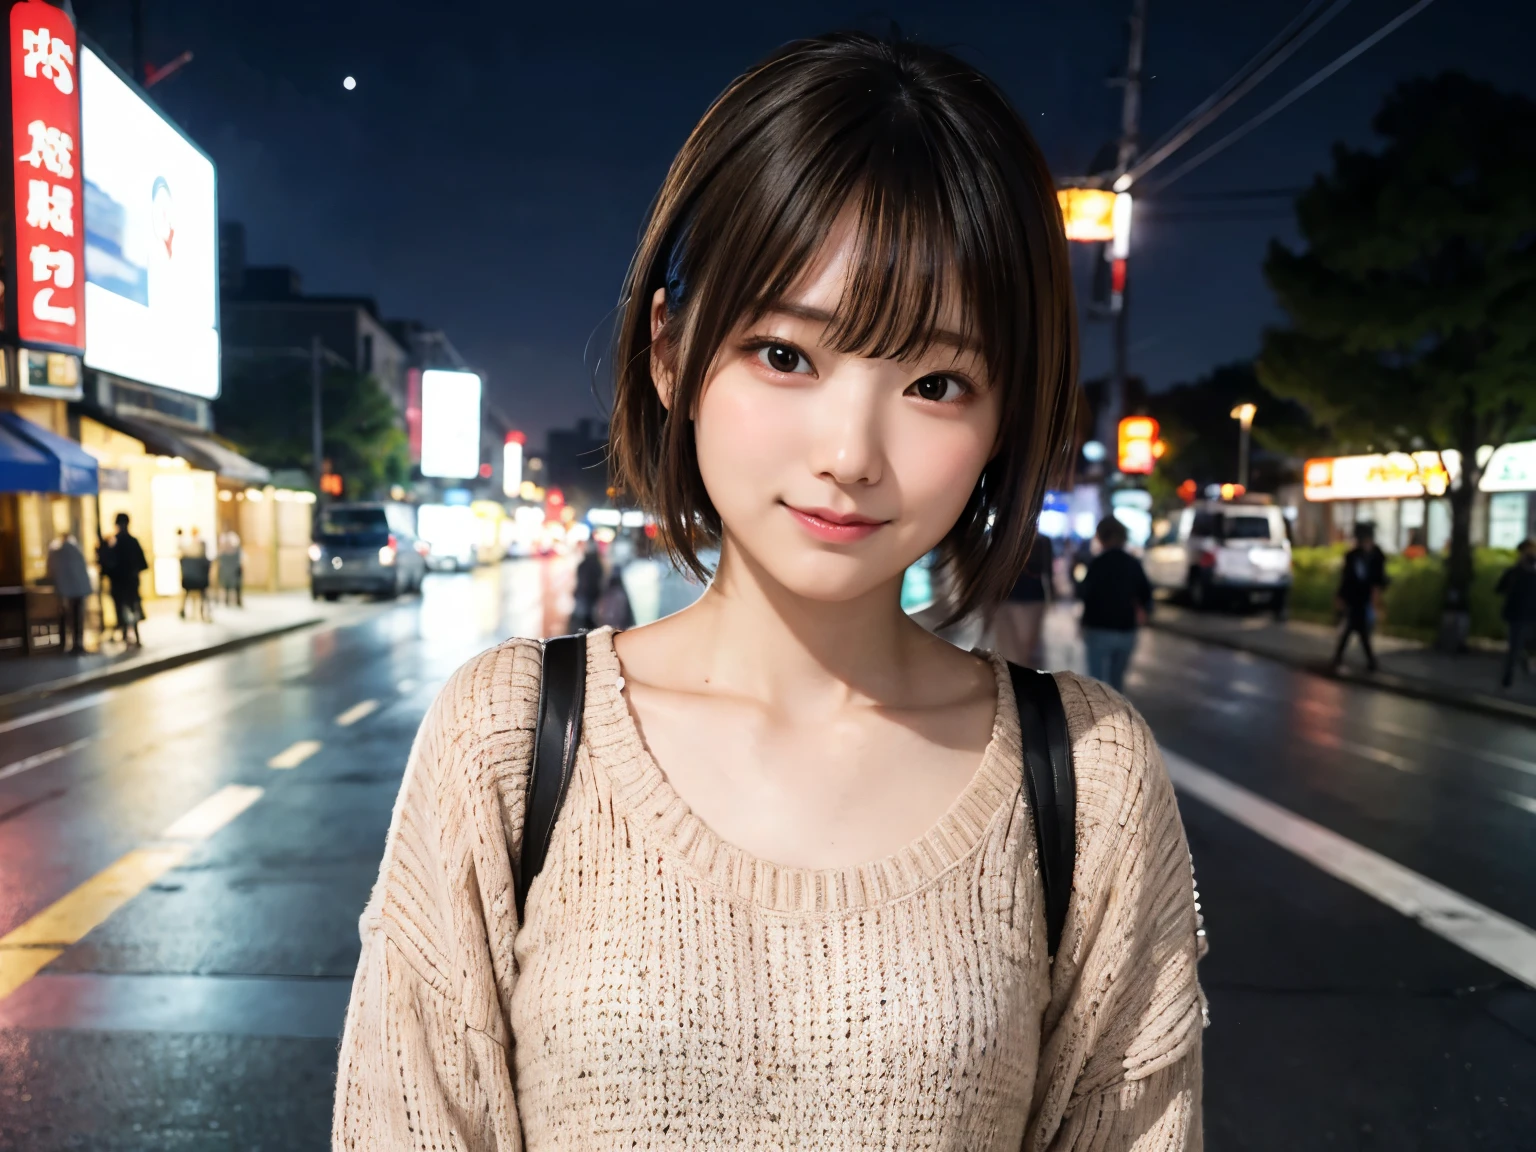 밤에 도쿄의 길모퉁이에서 캐주얼한 옷을 입은 일본 여성、검은테 안경을 쓰고 있다、뷰어를보고、(최상의 품질、걸작)))、높은 해상도、매우 상세한、걸작、영화 조명、(8K、최상의 품질、걸작:1.2)、(현실적인、포토리얼:1.37) 높은 해상도、매우 상세한、아시아 사람, 귀여운, 귀여운顔, 홀로, 짧은 머리 1.2, 거친 피부, 아름답고 세밀한 밤하늘, 야경、영화 조명, 서면 경계 깊이, 렌즈 플레어 라이트、(상체:0.5)、날짜、(코를 붉히다)、(웃음:1.15)、(입을 다물었다)작은 가슴、아름답고 섬세한 눈、(스웨터:1.1)、(짧은 머리:1.2)、떠다니는 머리카락 노바개구리 스타일